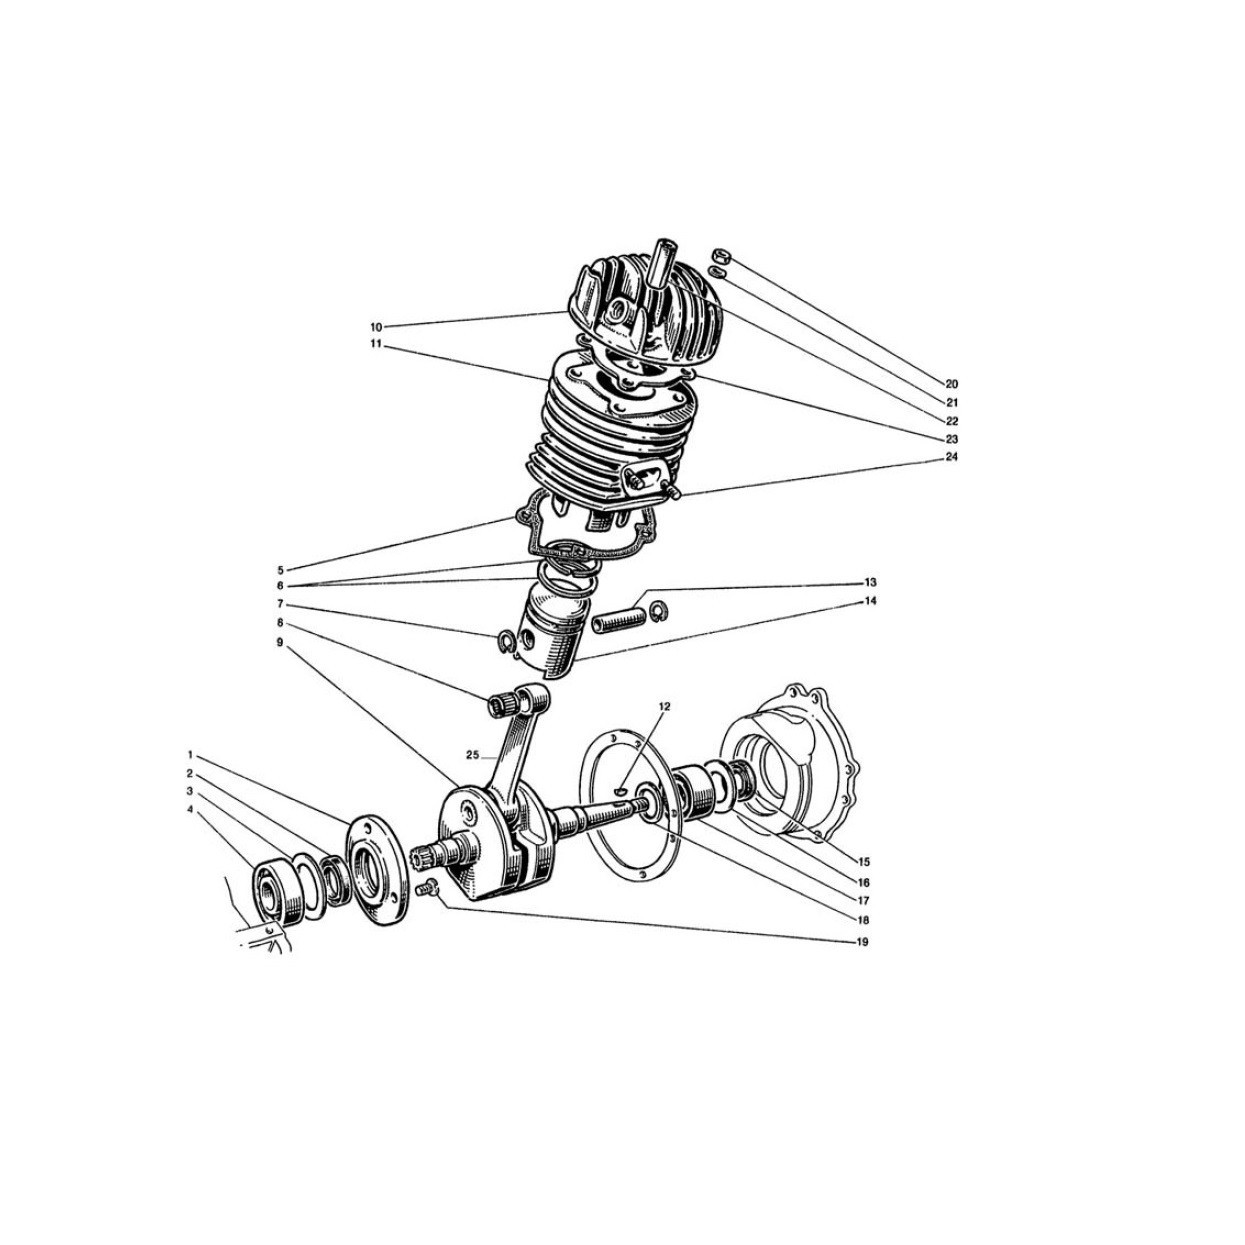 Albero Motore - Cilindro e Testa - Pistone (Tav.2)